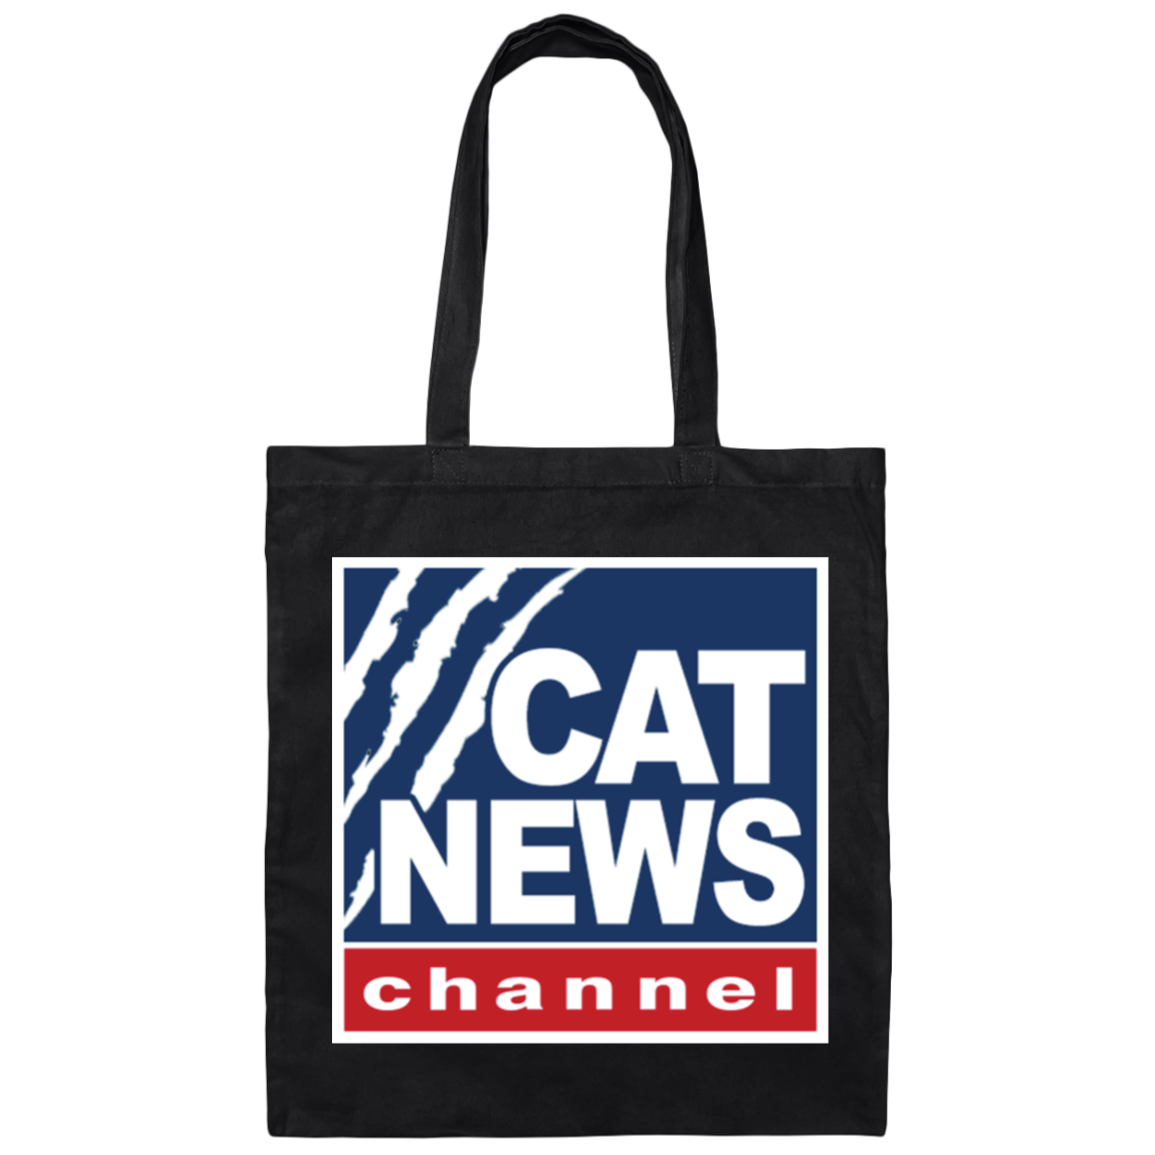 "Cat News" Canvas Tote Bag